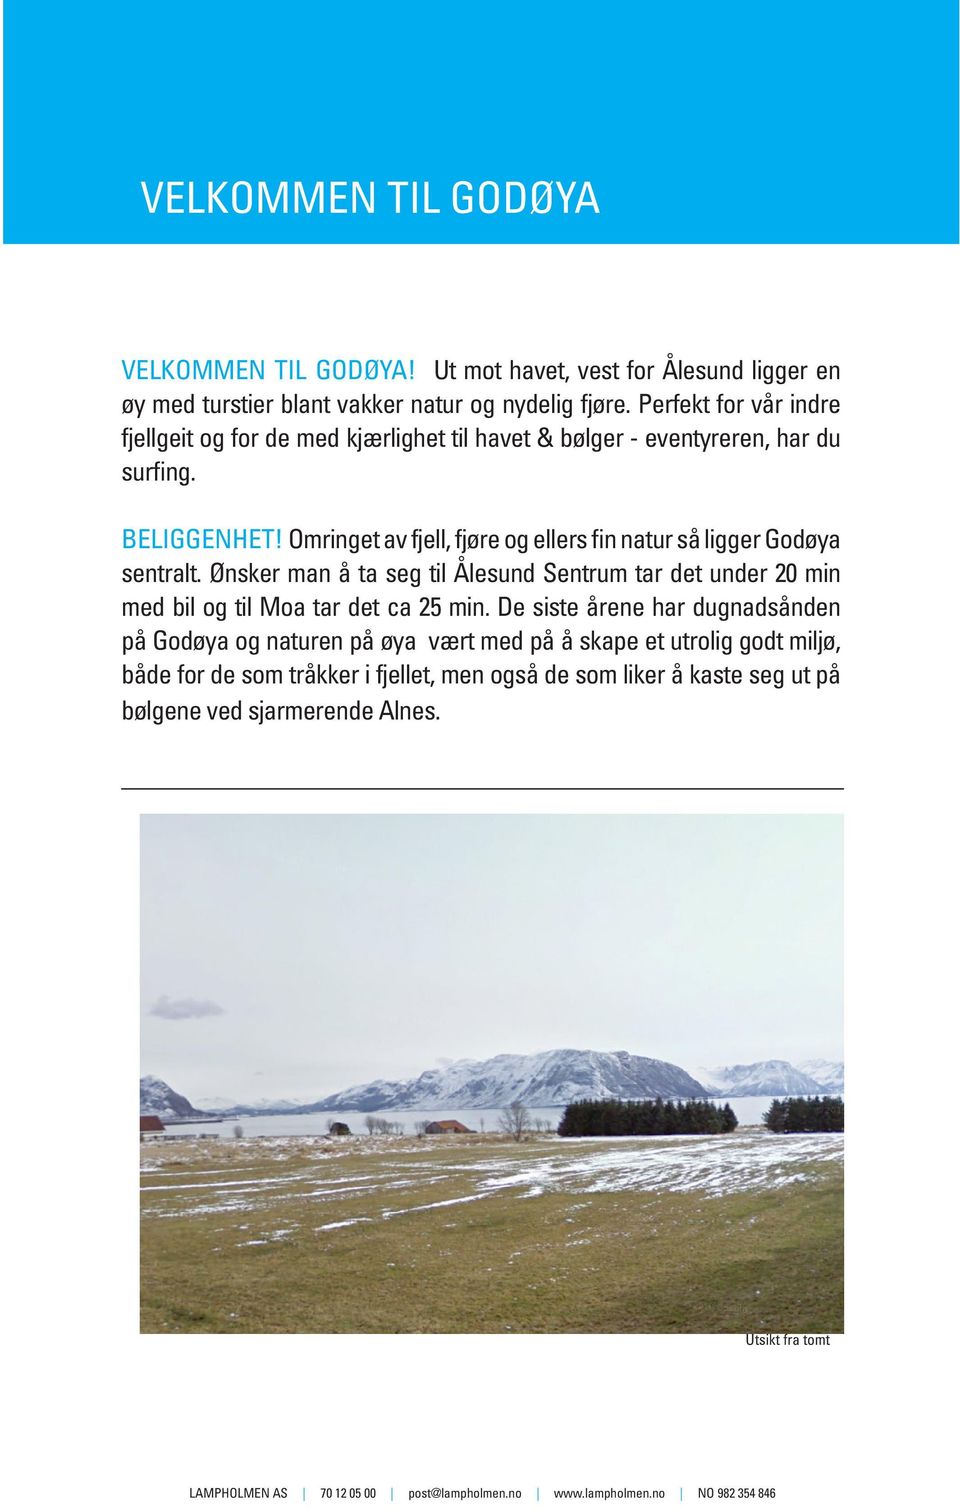 Omringet av fjell, fjøre og ellers fin natur så ligger Godøya sentralt. Ønsker man å ta seg til Ålesund Sentrum tar det under 20 min med bil og til Moa tar det ca 25 min.